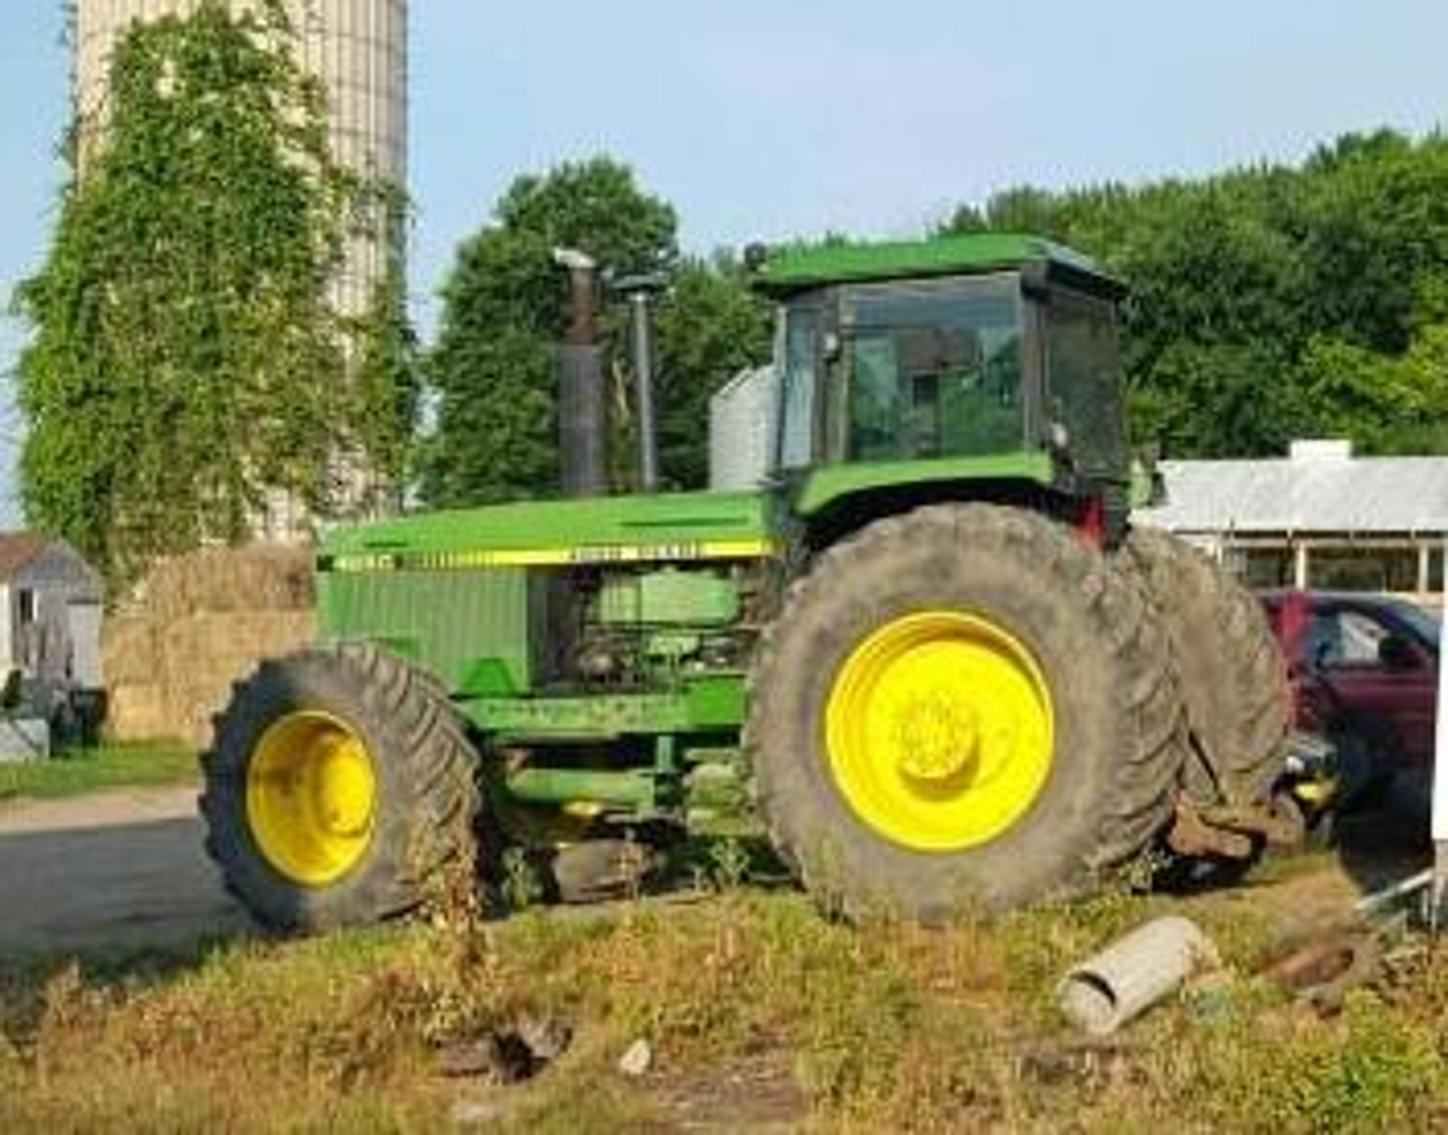 Farm Equipment - Trucks - Supplies